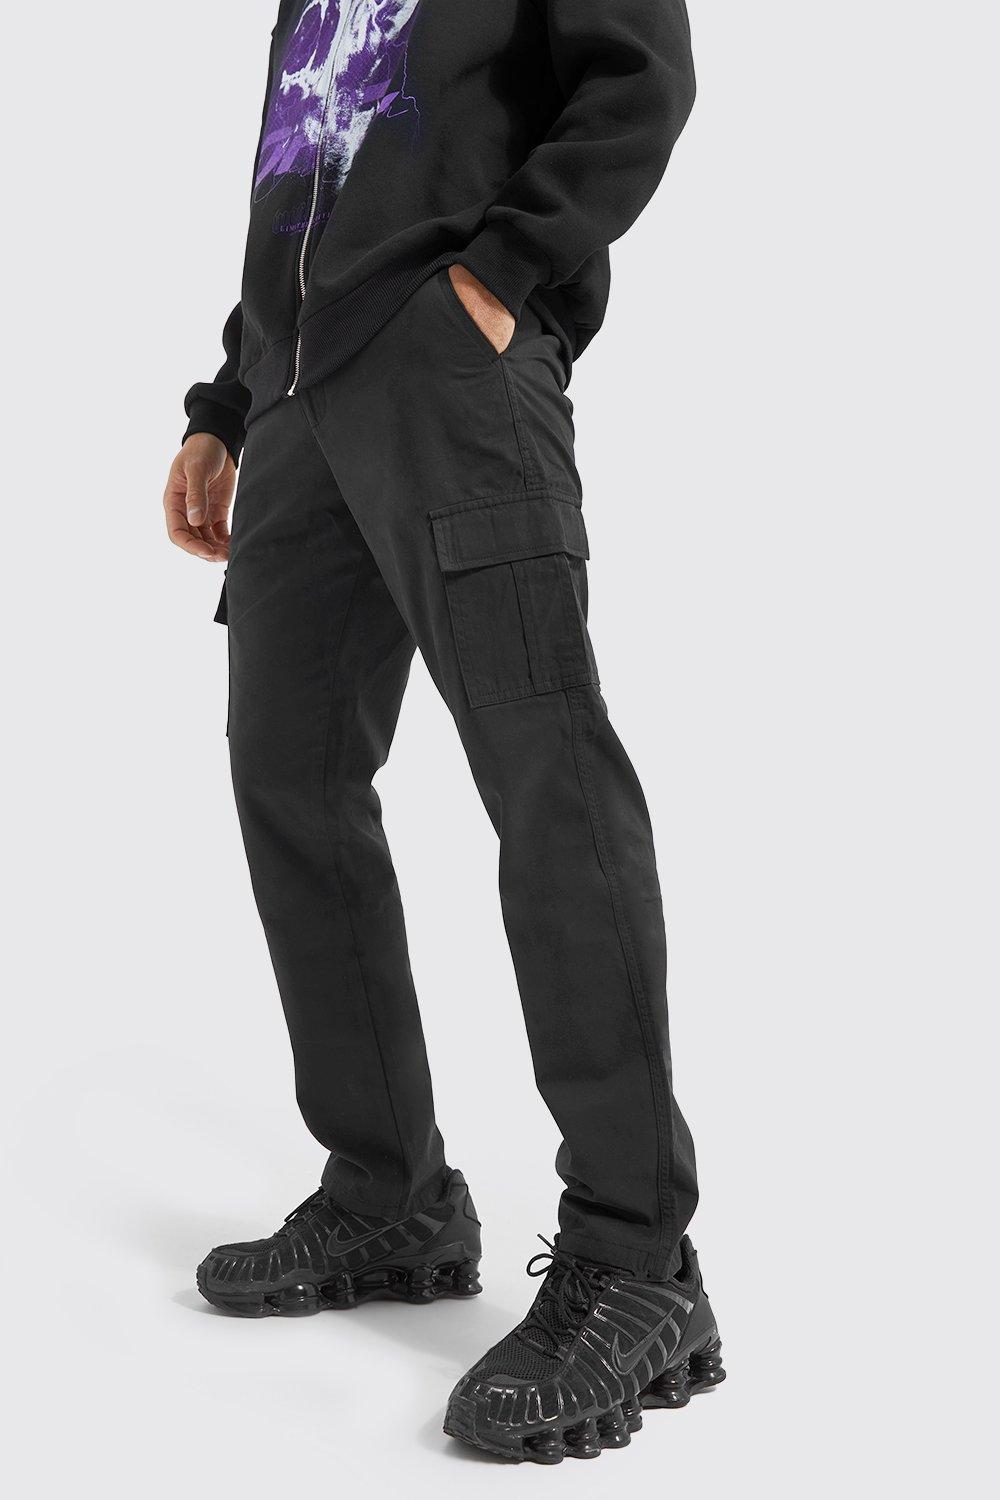 pantalon cargo droit homme - noir - 36, noir